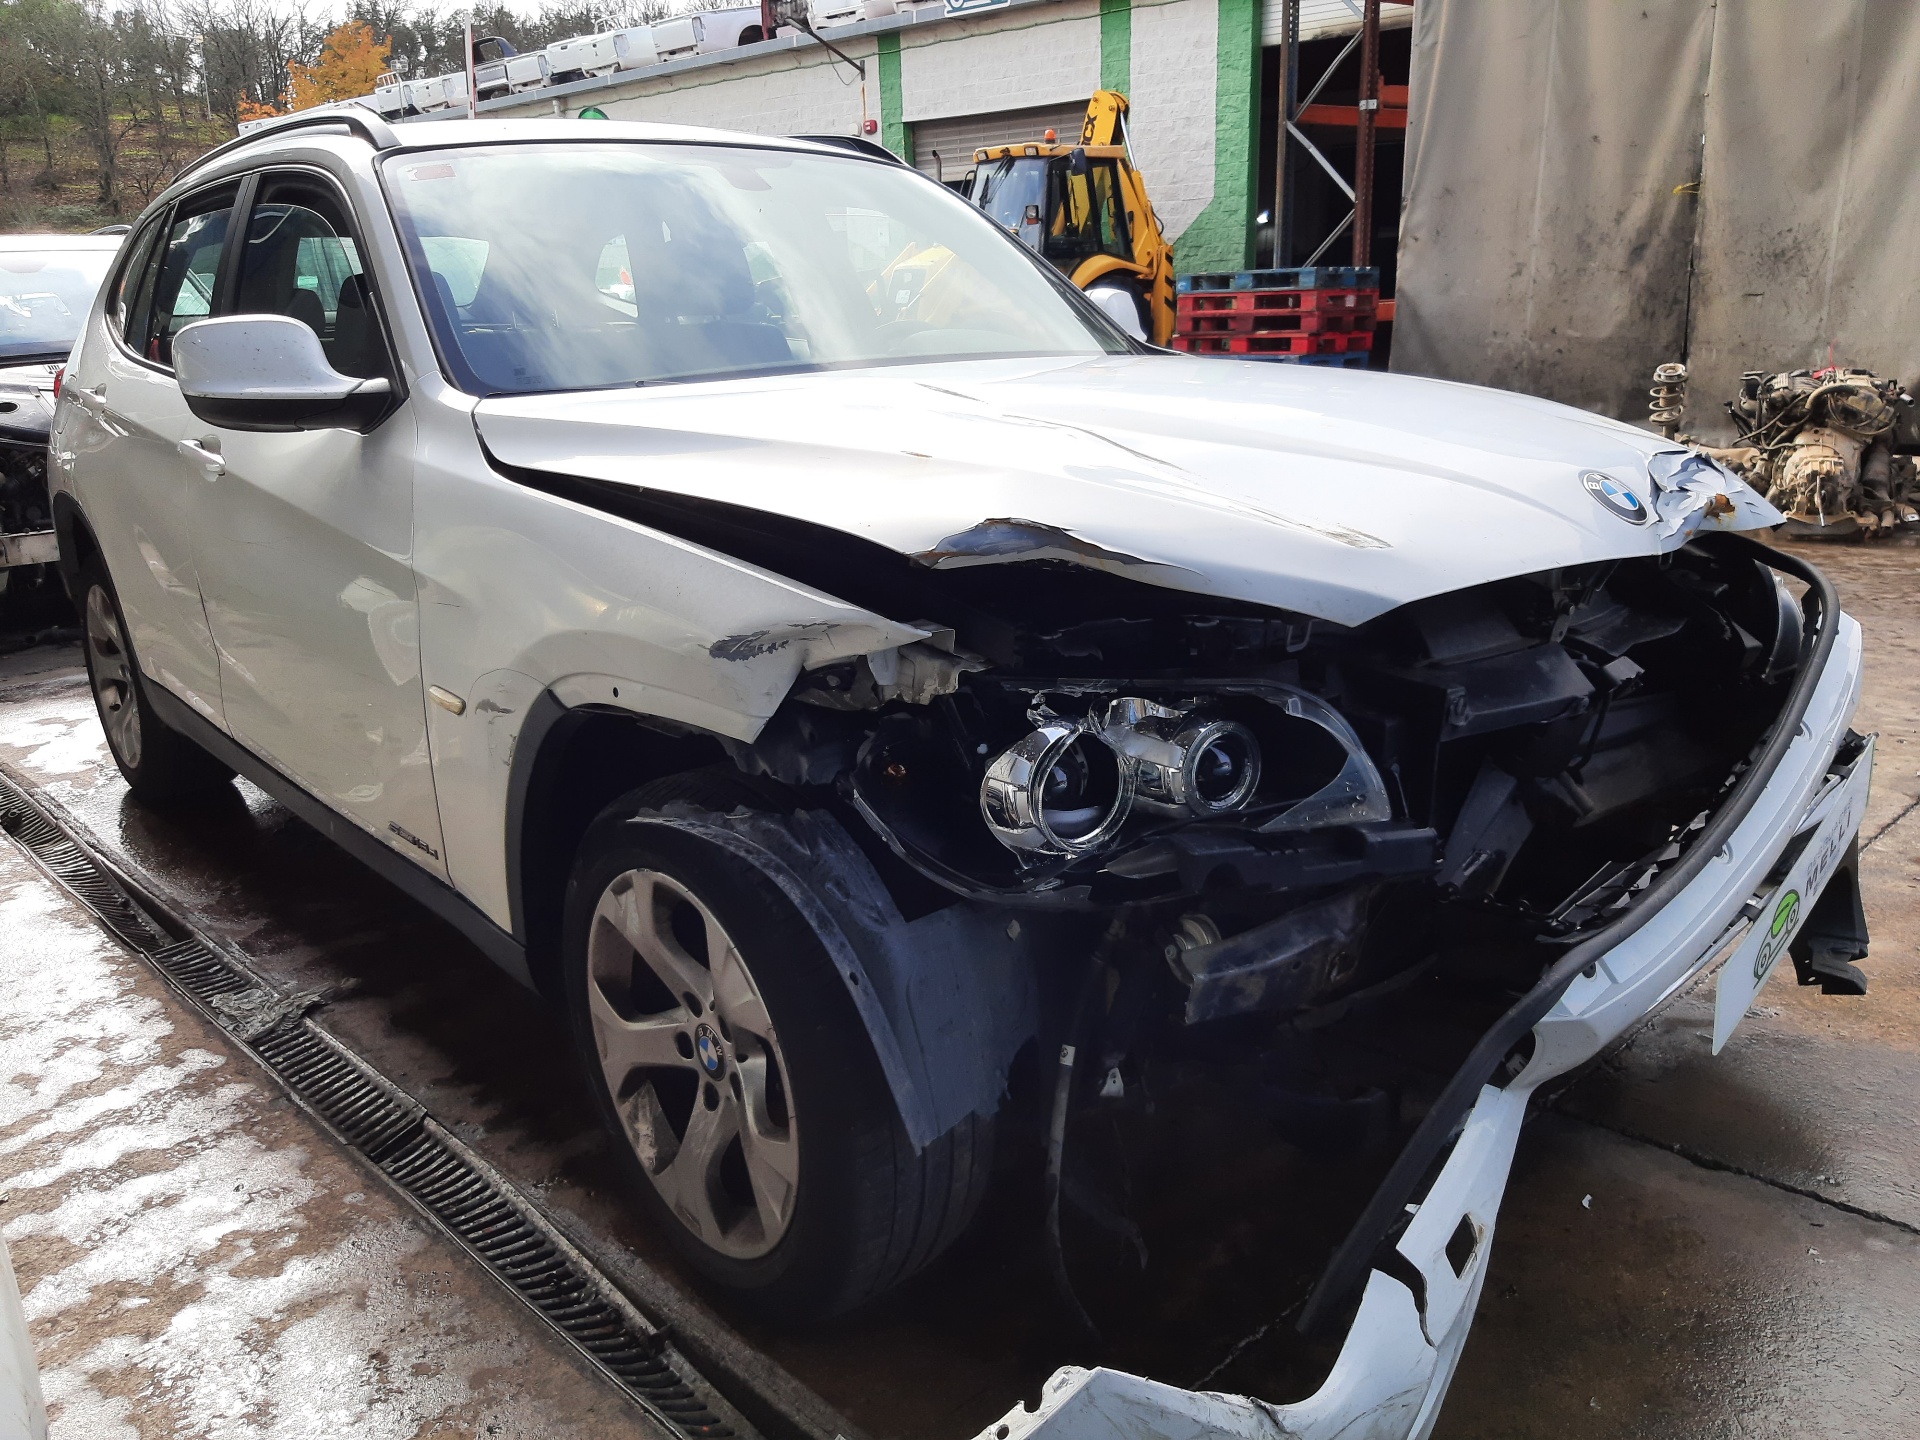 BMW X1 E84 (2009-2015) Блок розжига ксенона 7237647 22751778